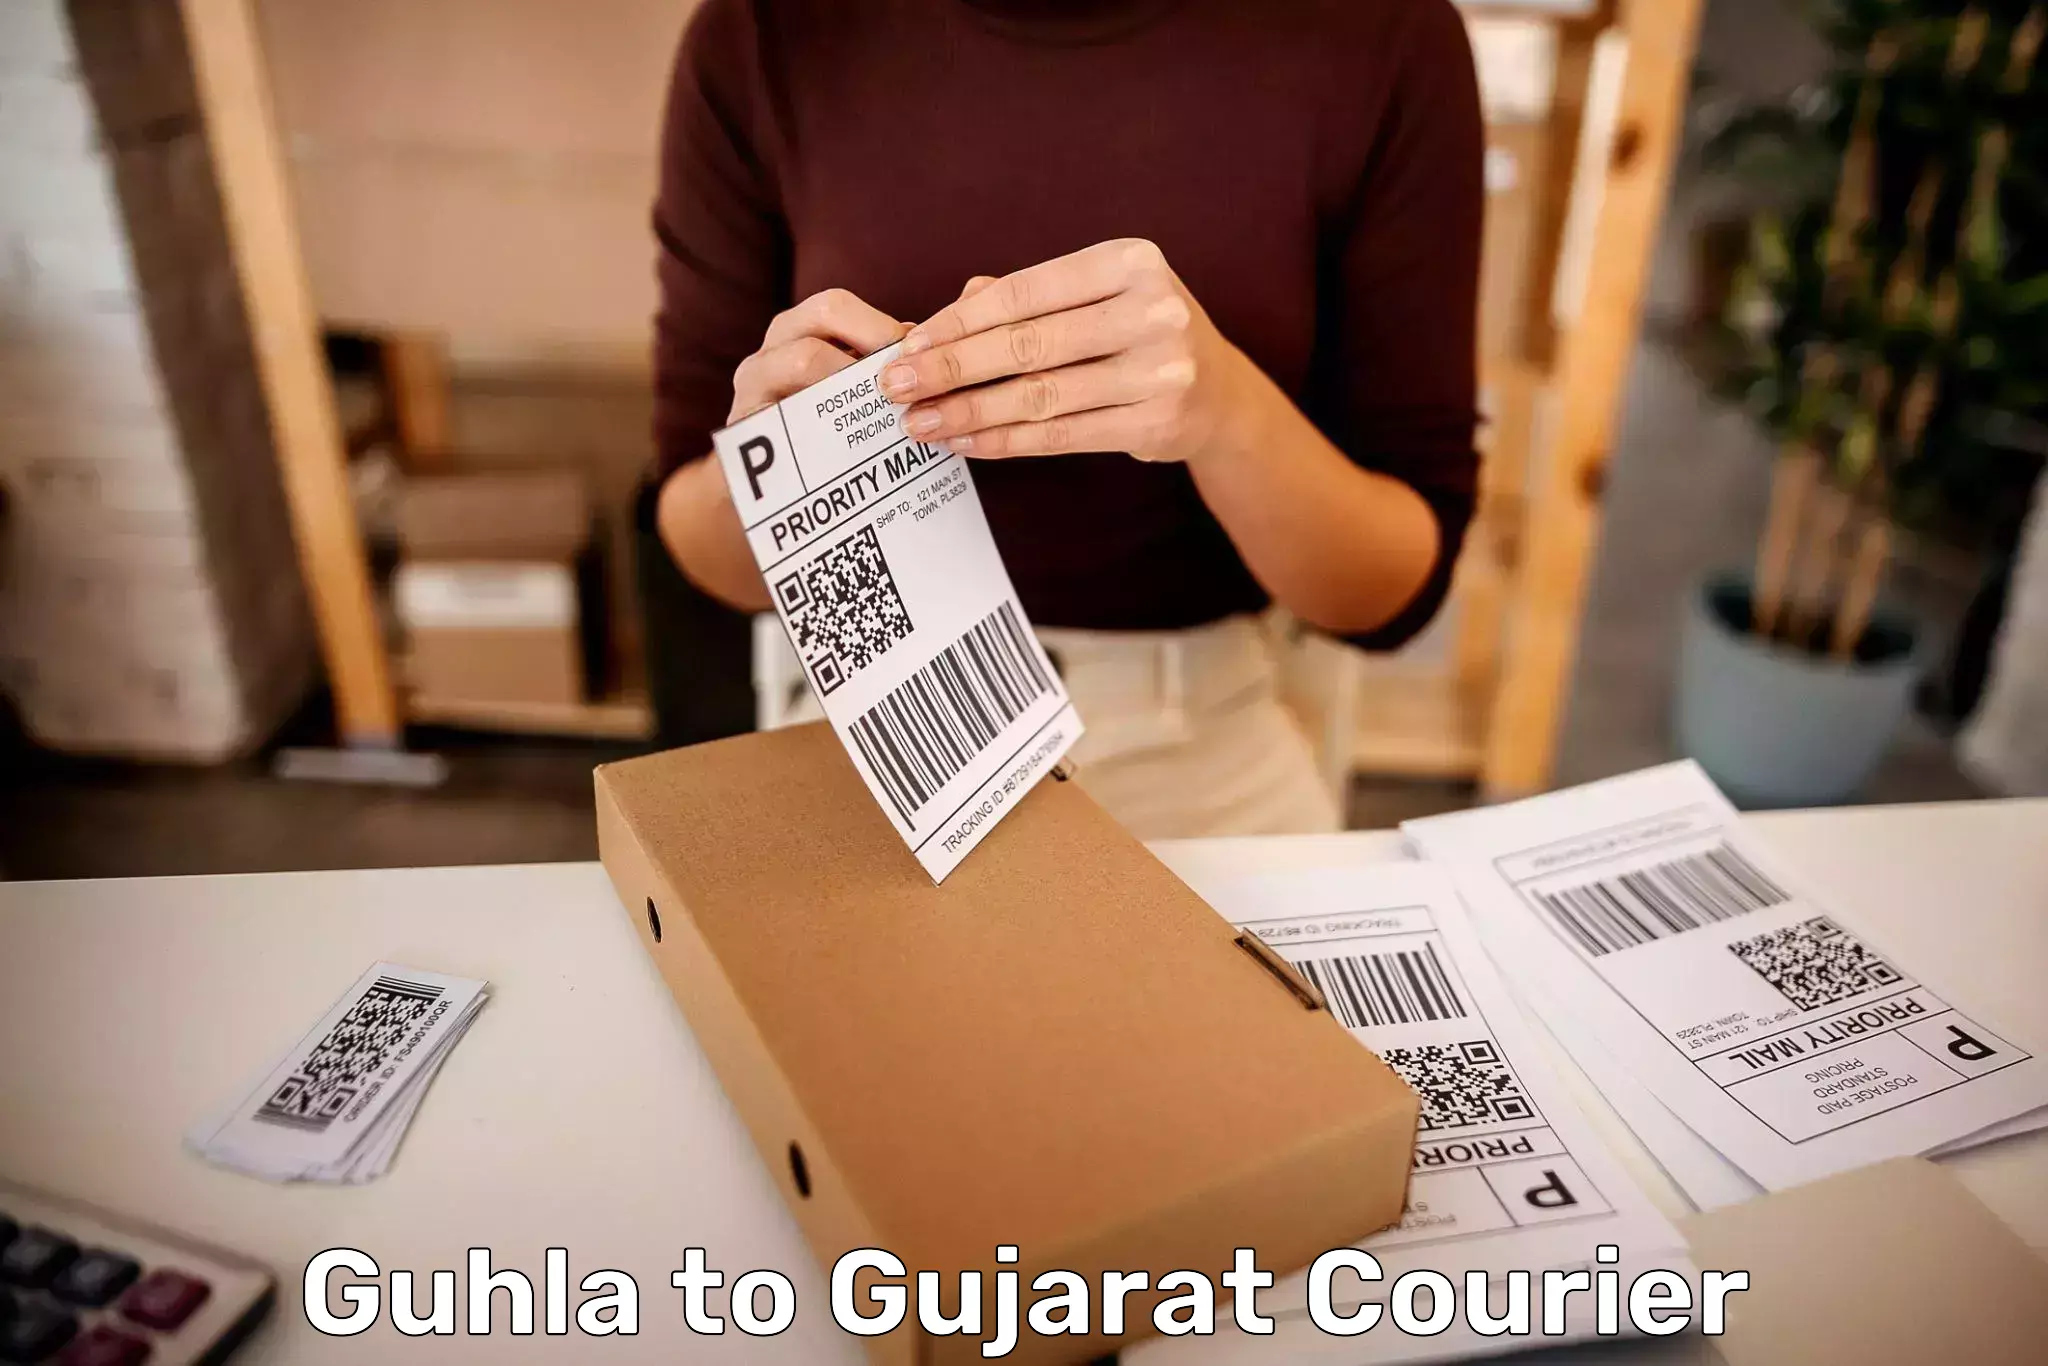 Baggage delivery planning Guhla to Satlasana